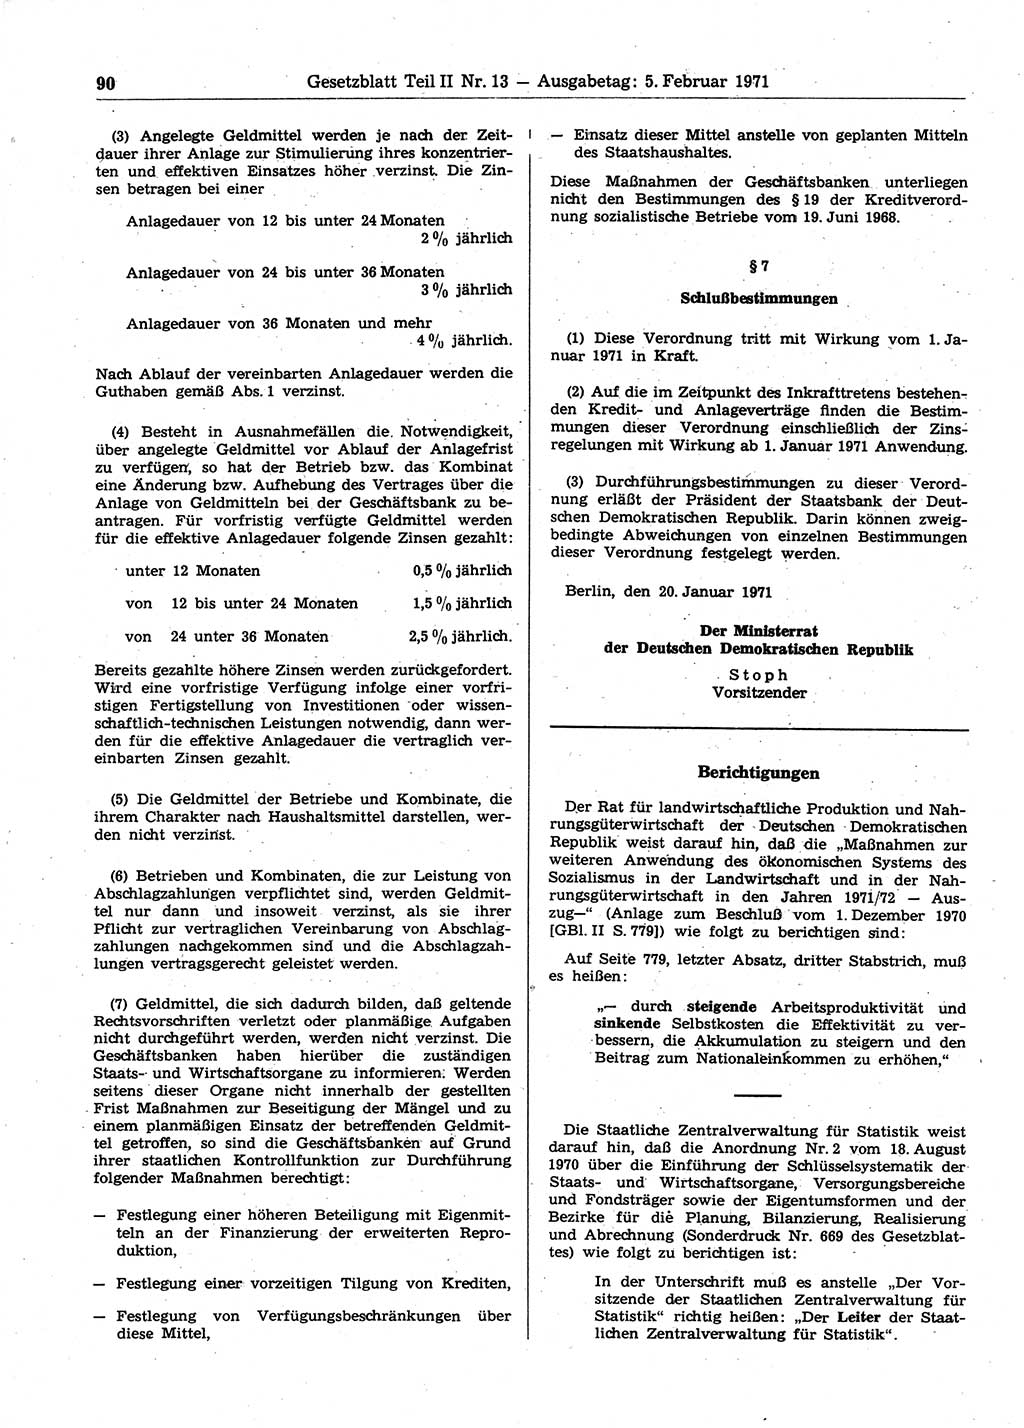 Gesetzblatt (GBl.) der Deutschen Demokratischen Republik (DDR) Teil ⅠⅠ 1971, Seite 90 (GBl. DDR ⅠⅠ 1971, S. 90)